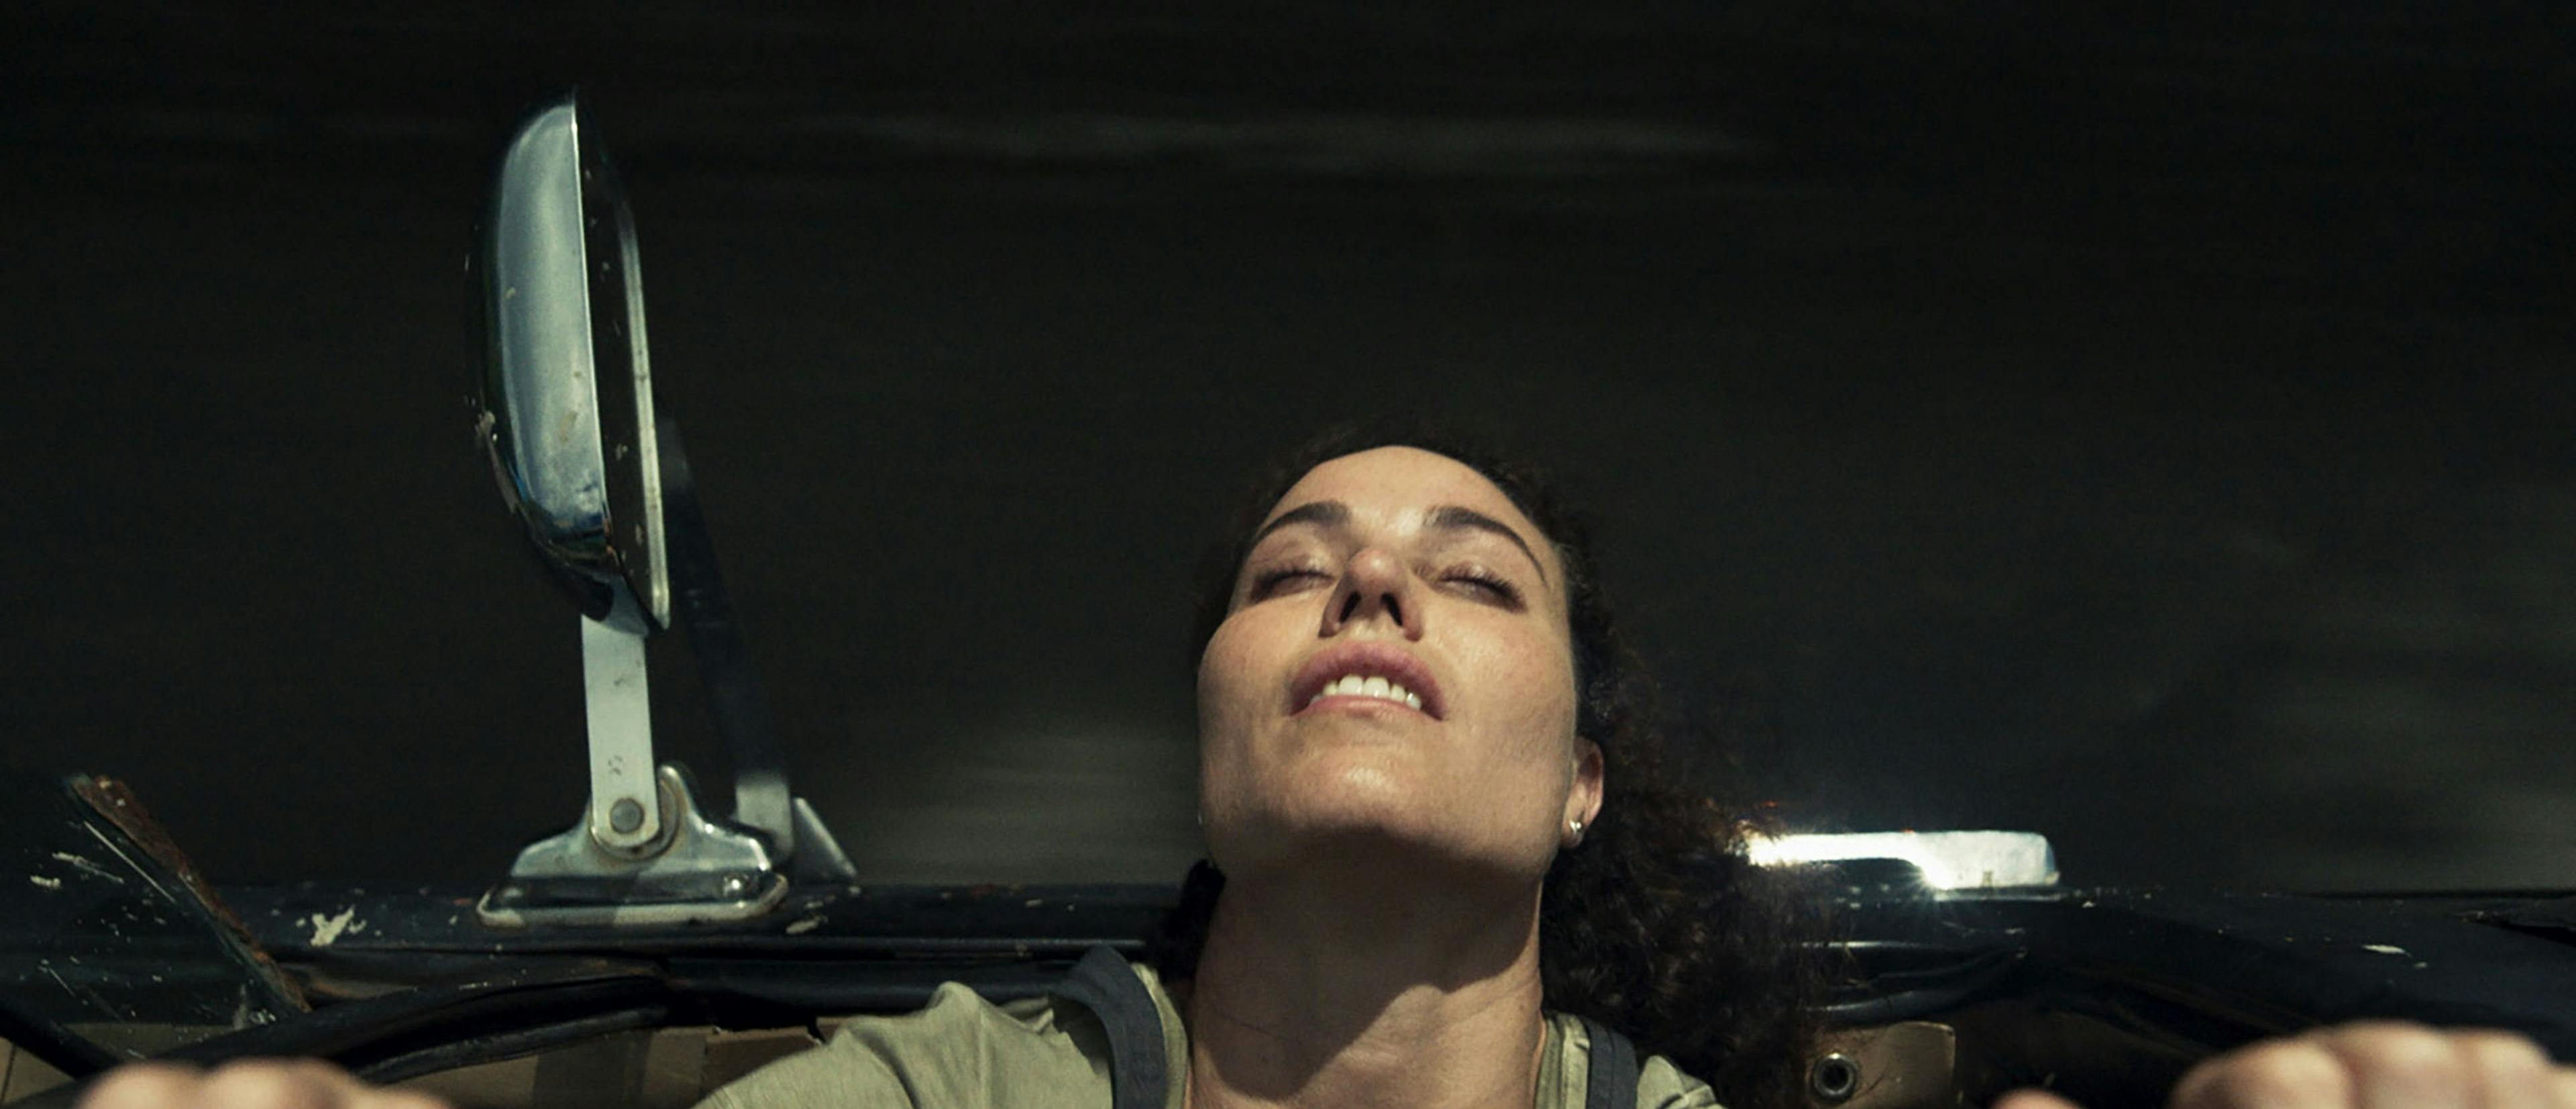 'La pecera', de Glorimar Marrero Sánchez, es una de las películas favoritas de Janina en Sundance